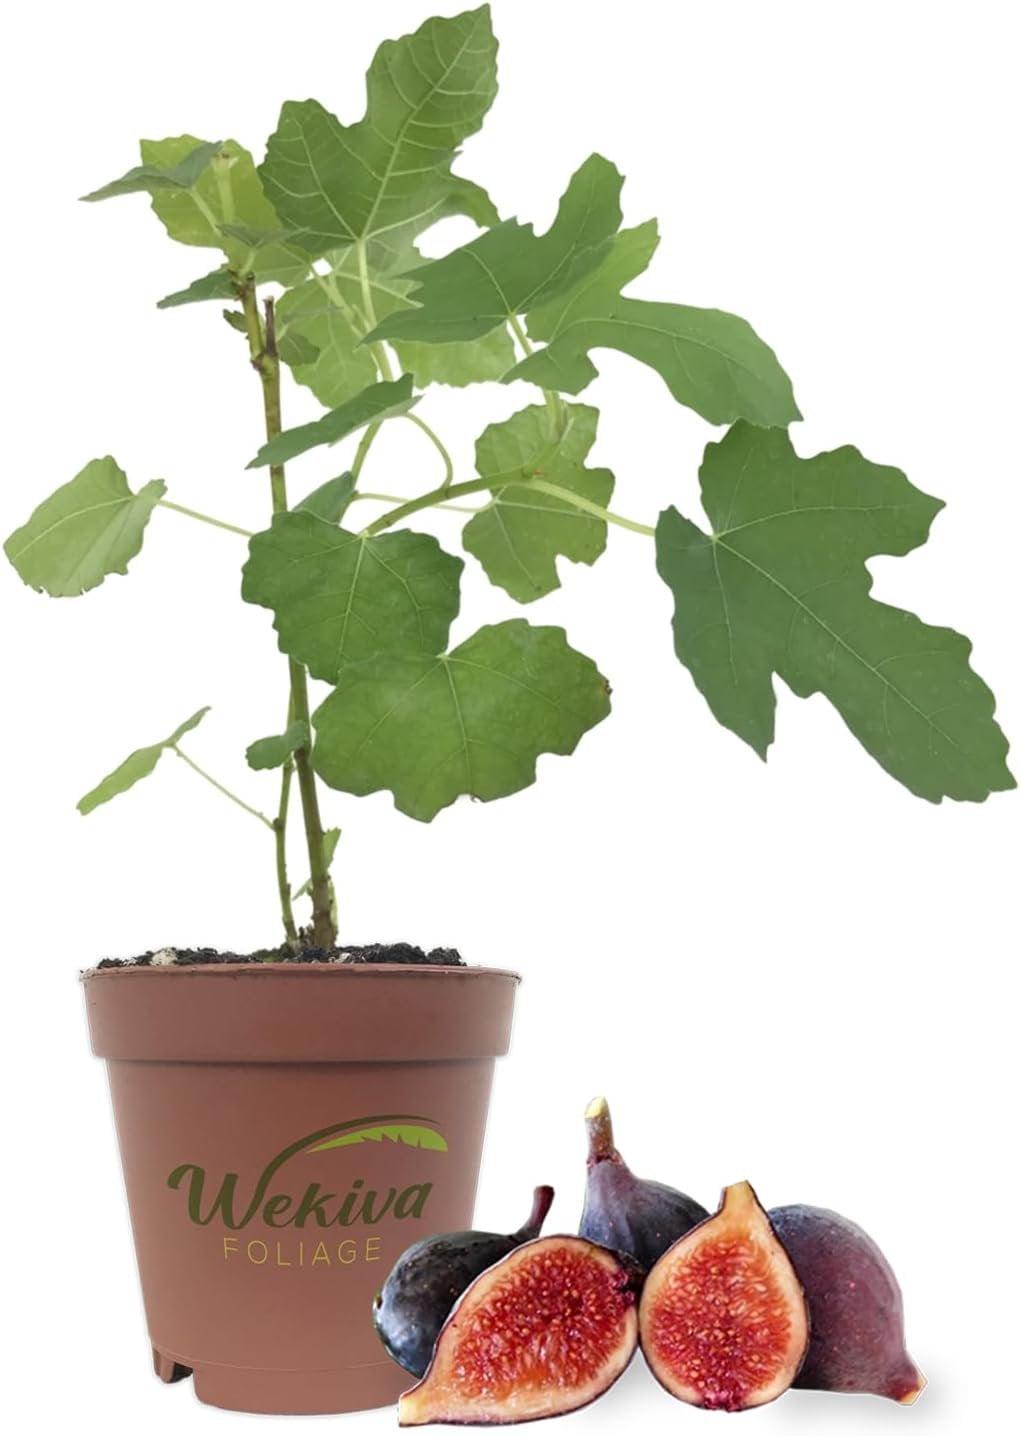 Violet de Bordeaux Fig Tree - Live Plant in a 2 Inch Pot - Ficus Carica ...